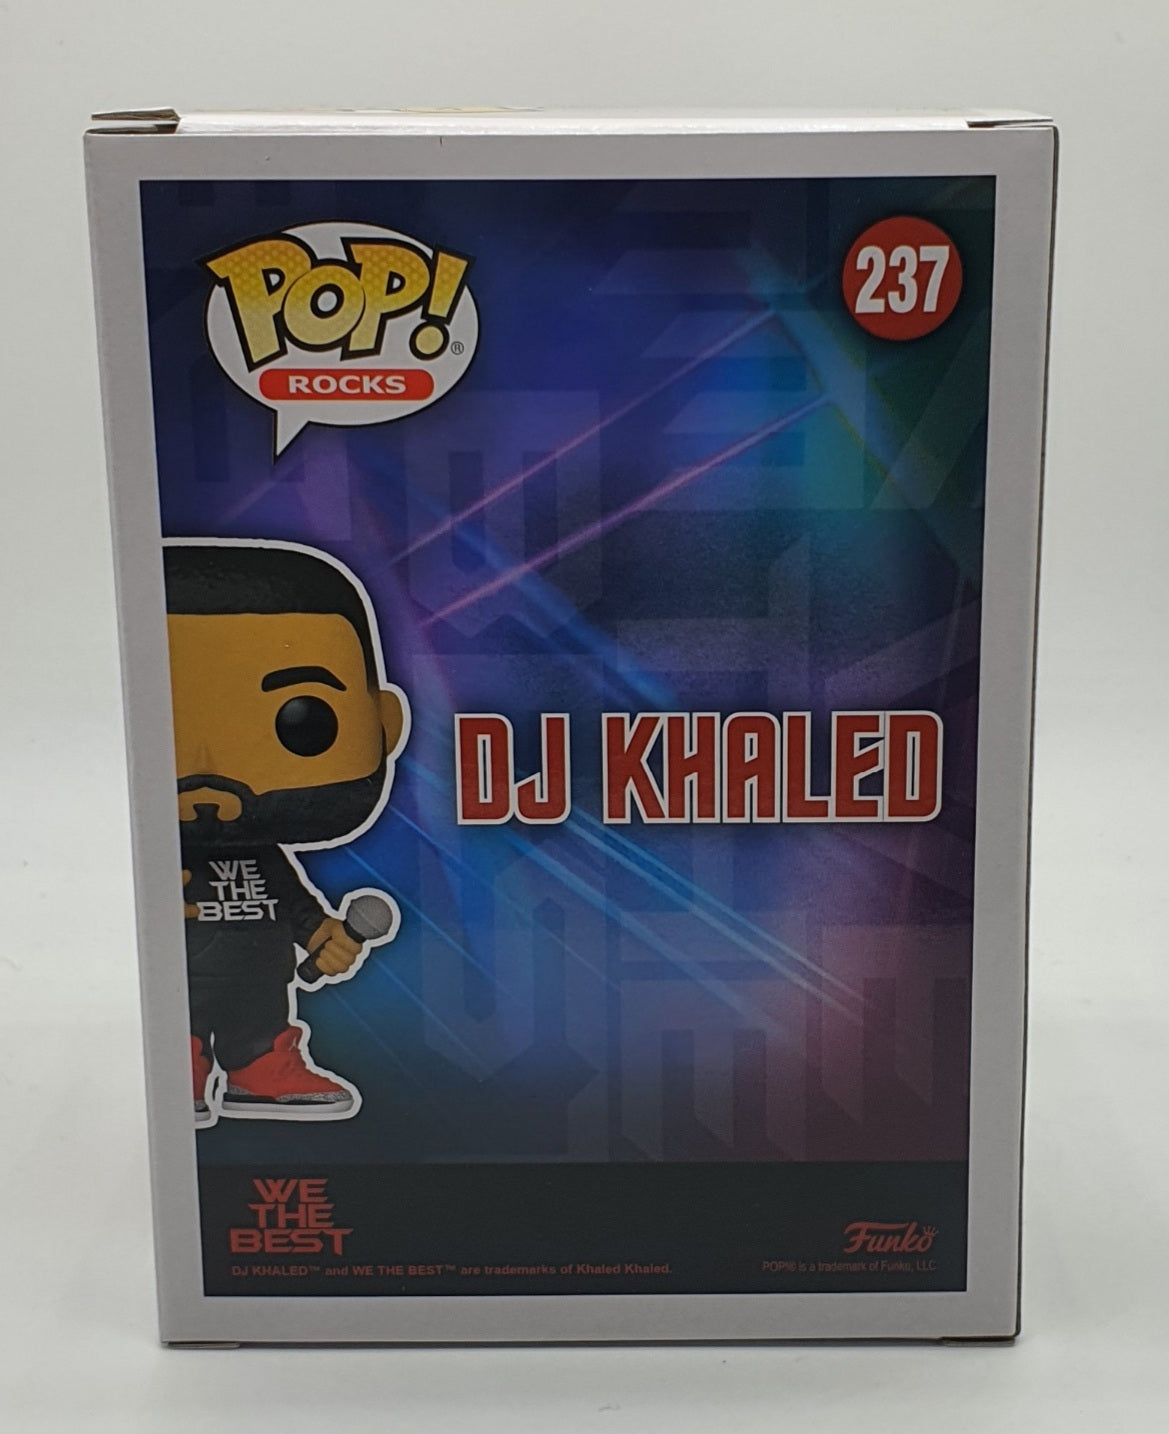 237 - ROCKS - DJ KHALID